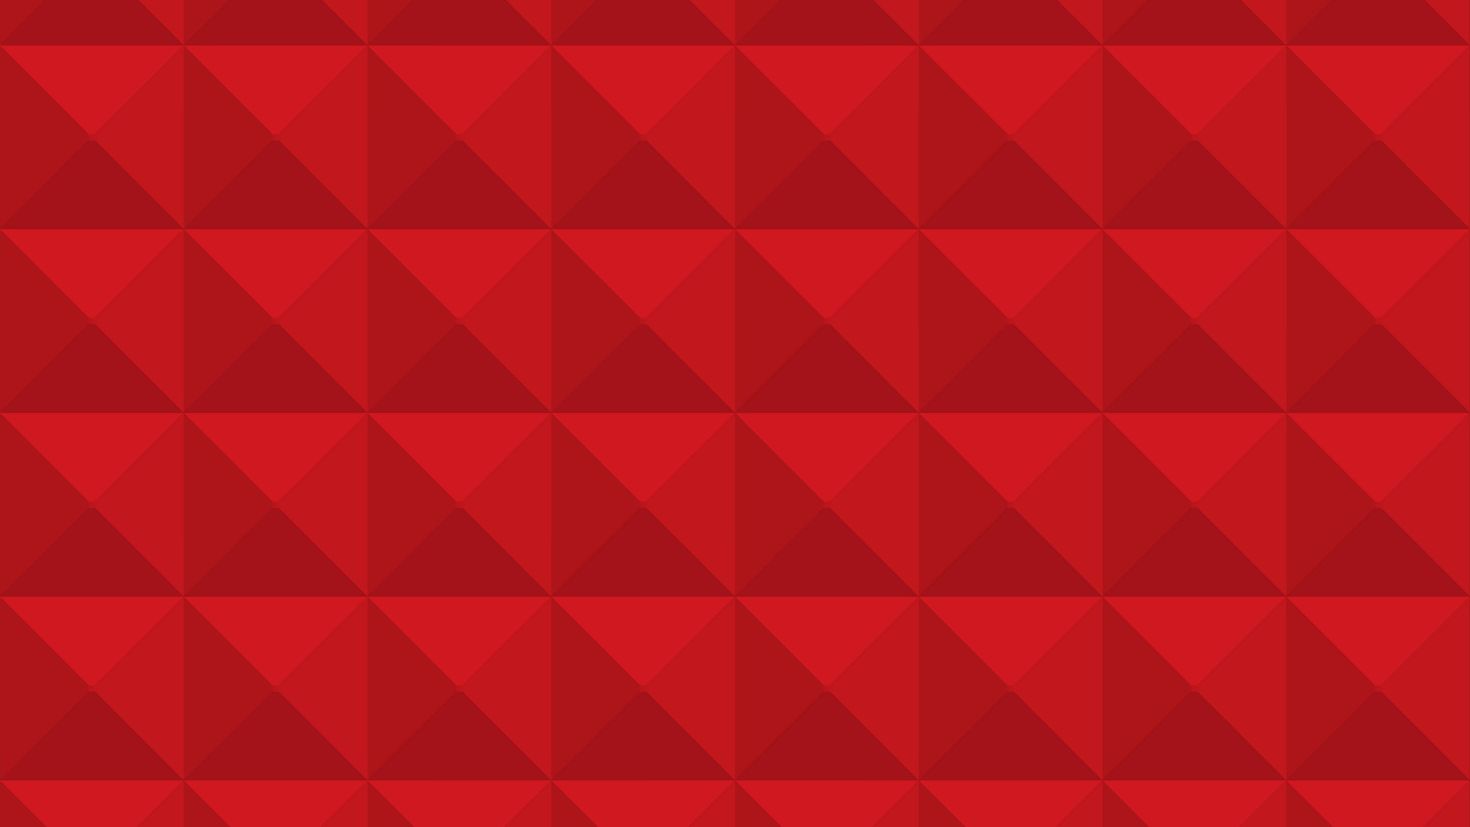 Plan red. Красный геометрический узор. Красный ромб. Красный фон с геометрическими фигурами. Красный треугольник.